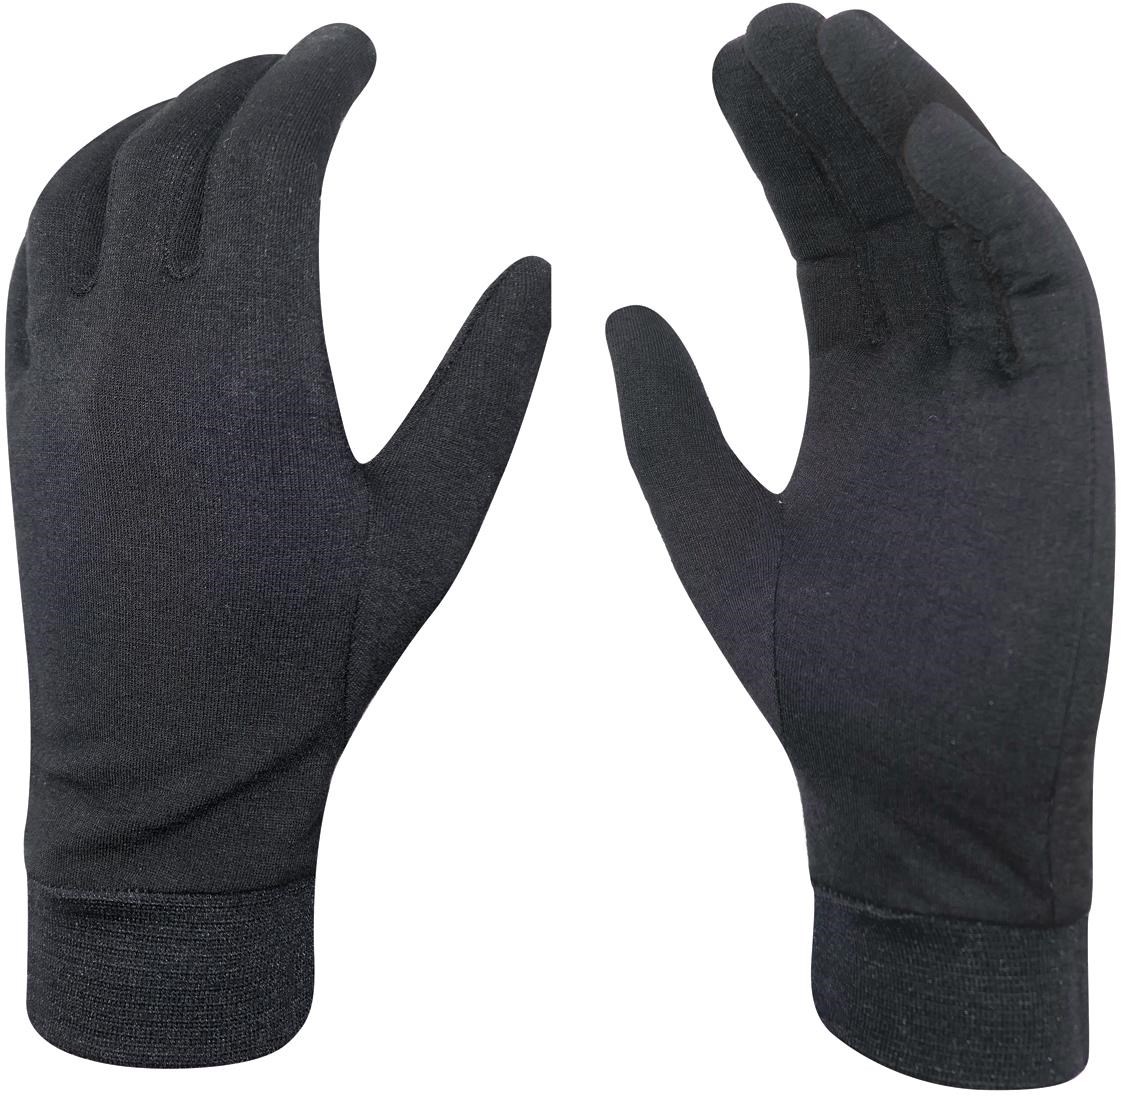 Chiba Merino Liner Winter Glove product image